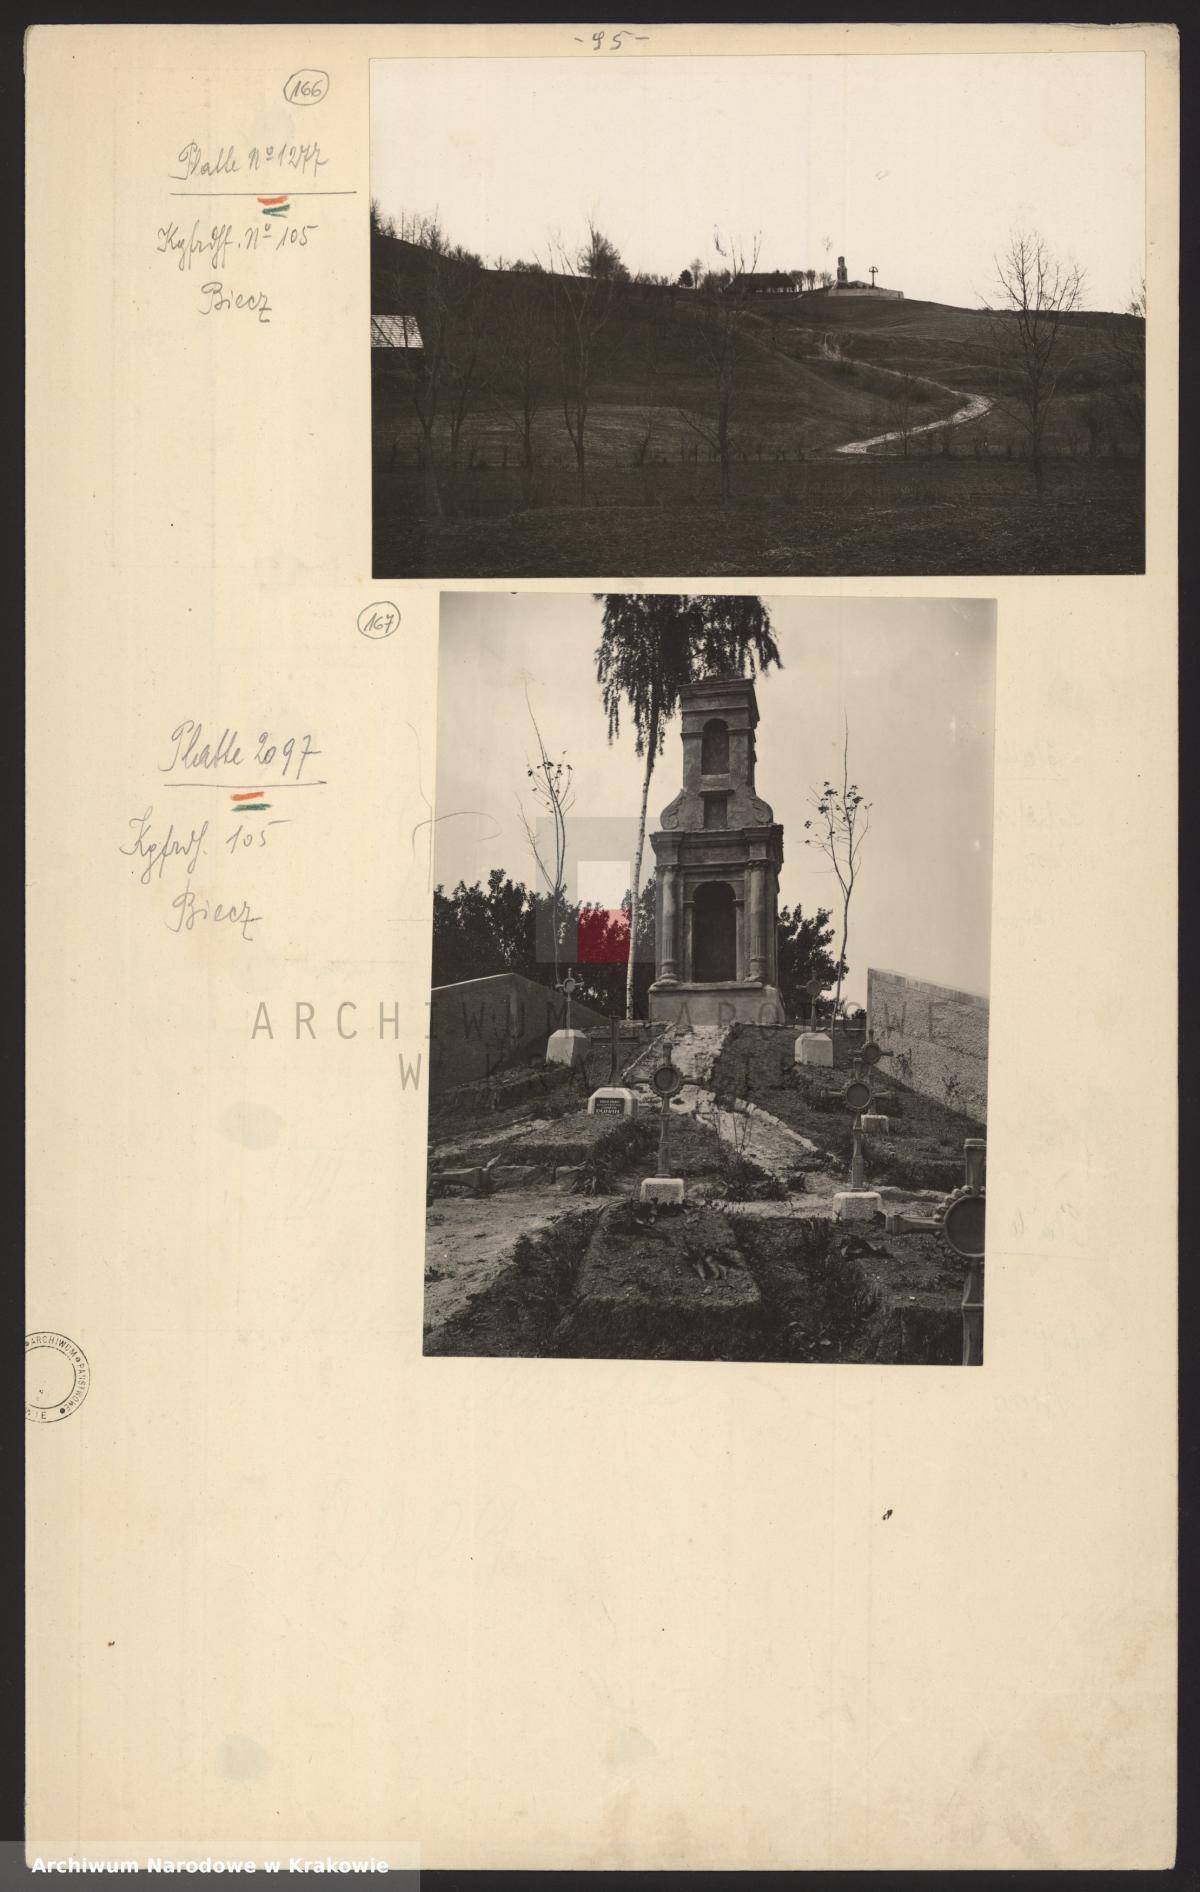 Archiwum narodowe oryginał karty cmentarz nr 105 Biecz  